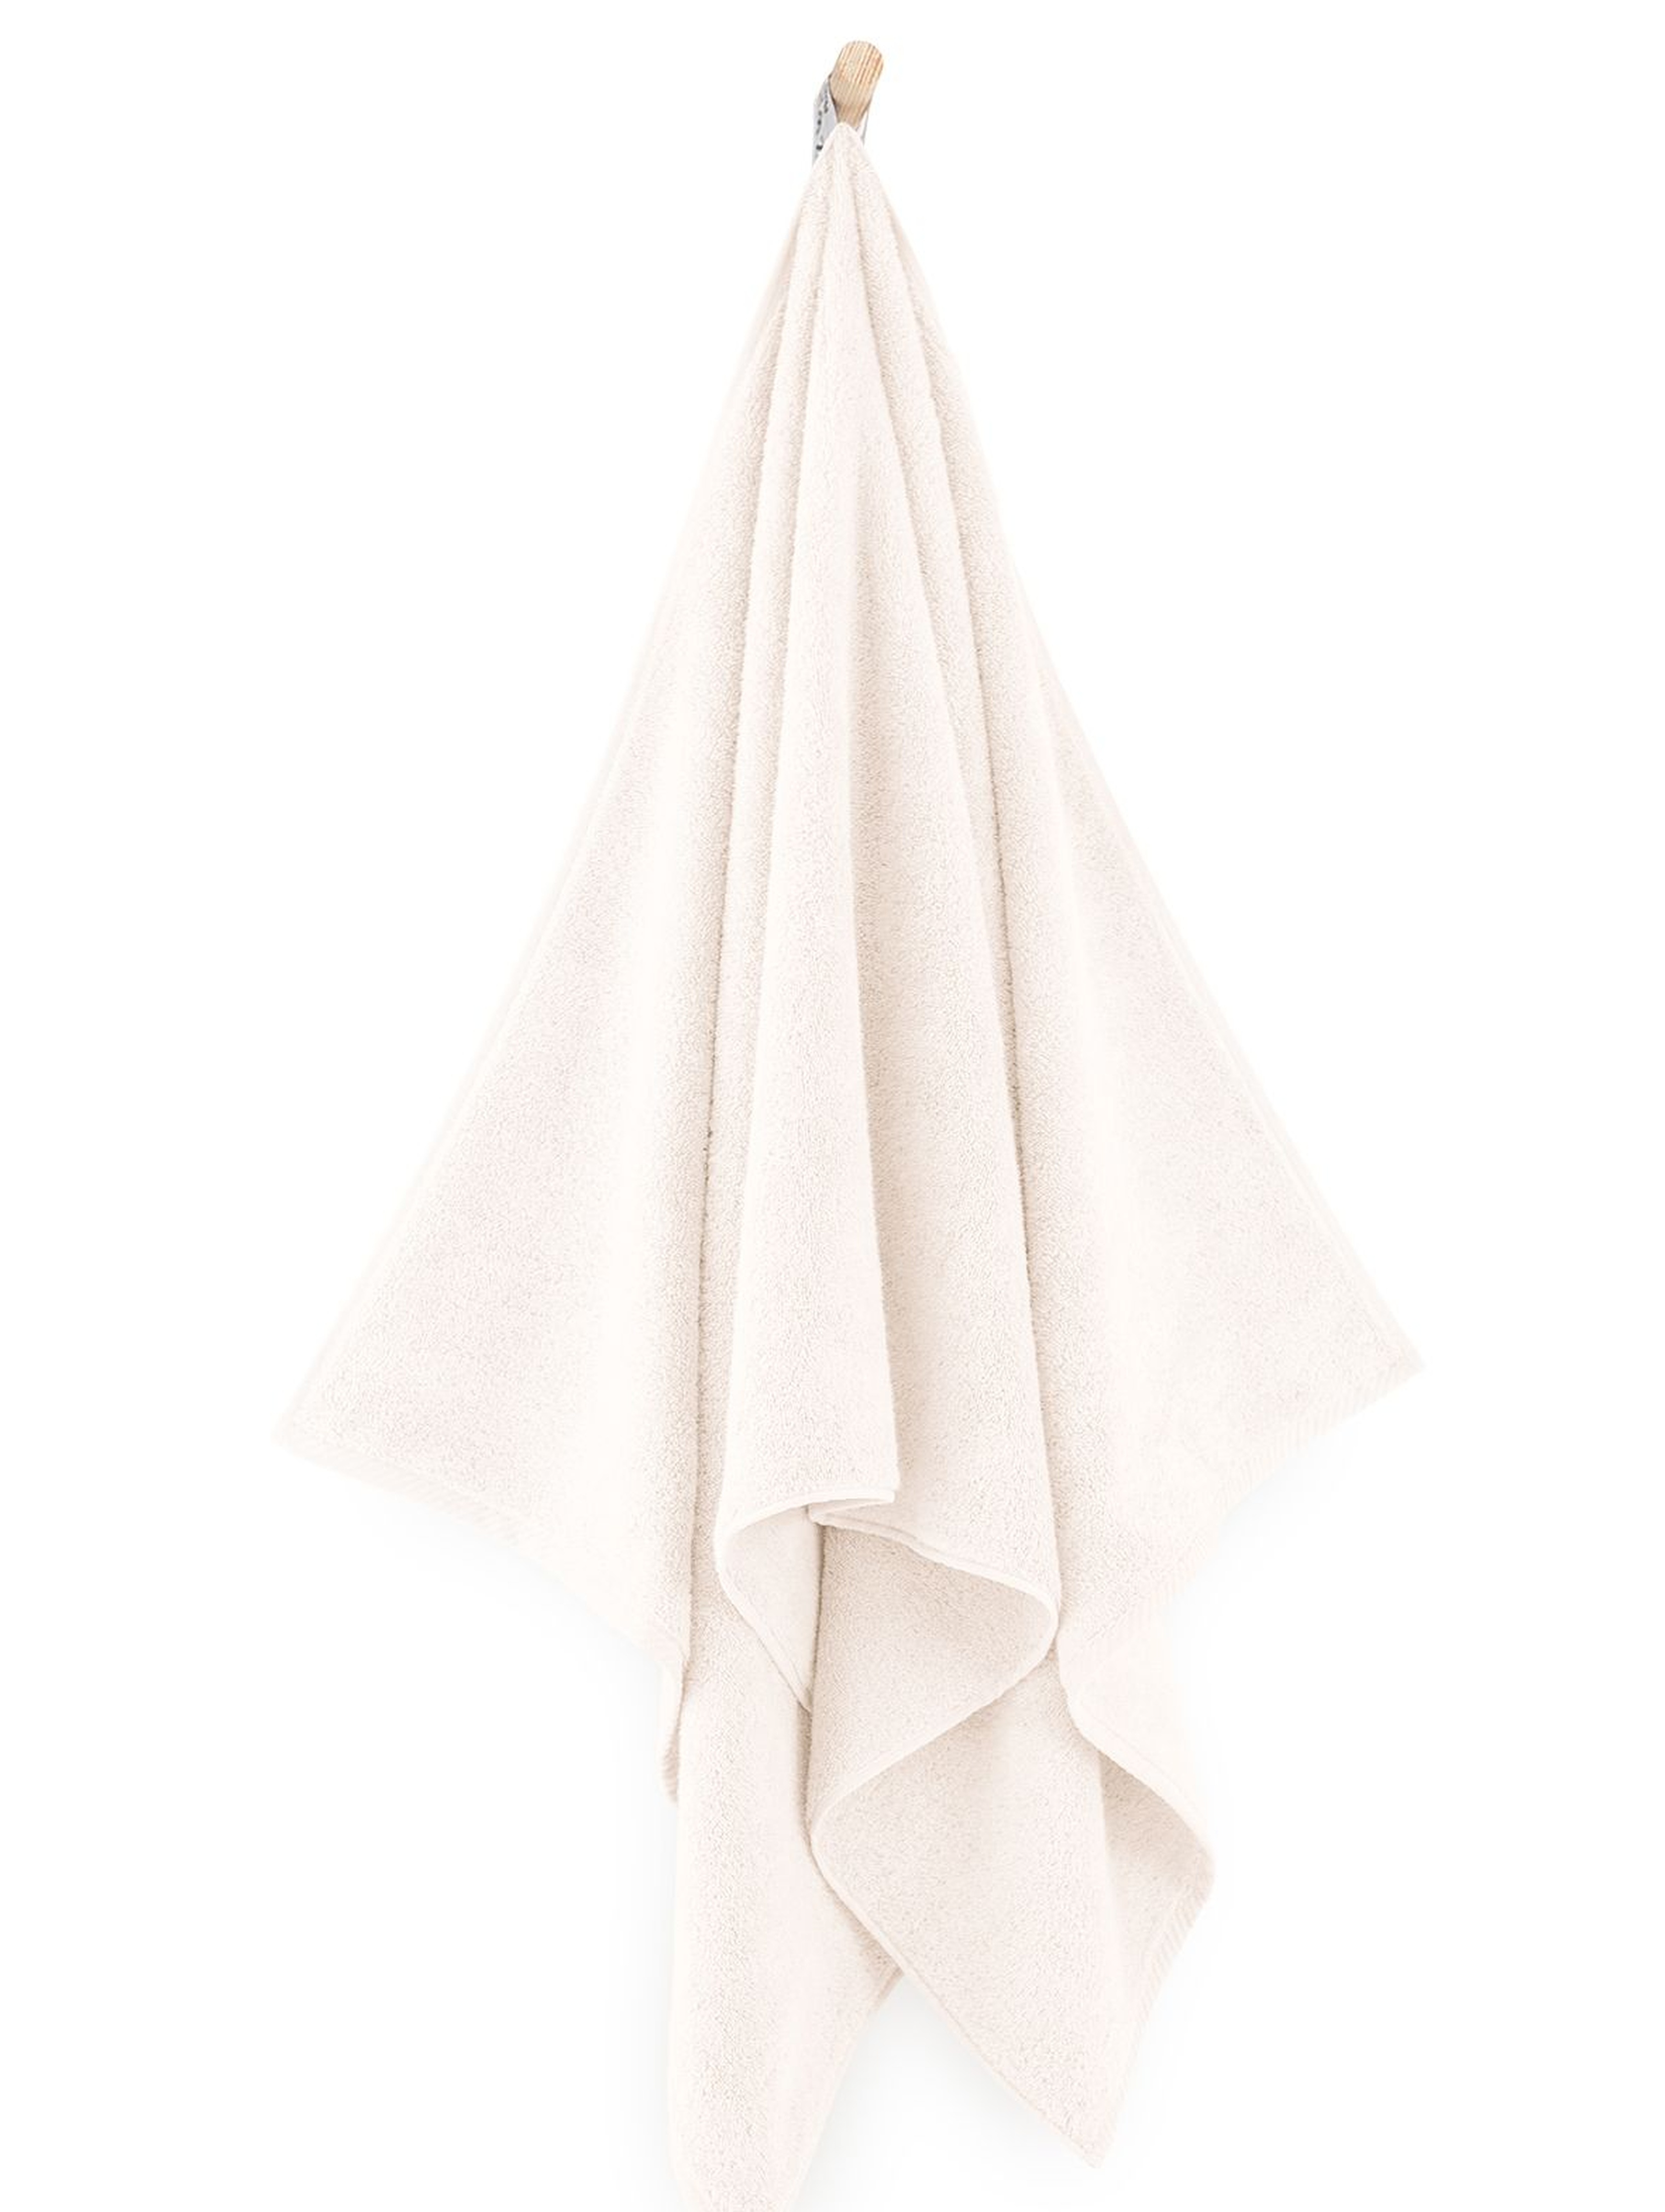 Ręcznik z bawełny egipskiej Kiwi ecru 50x100cm